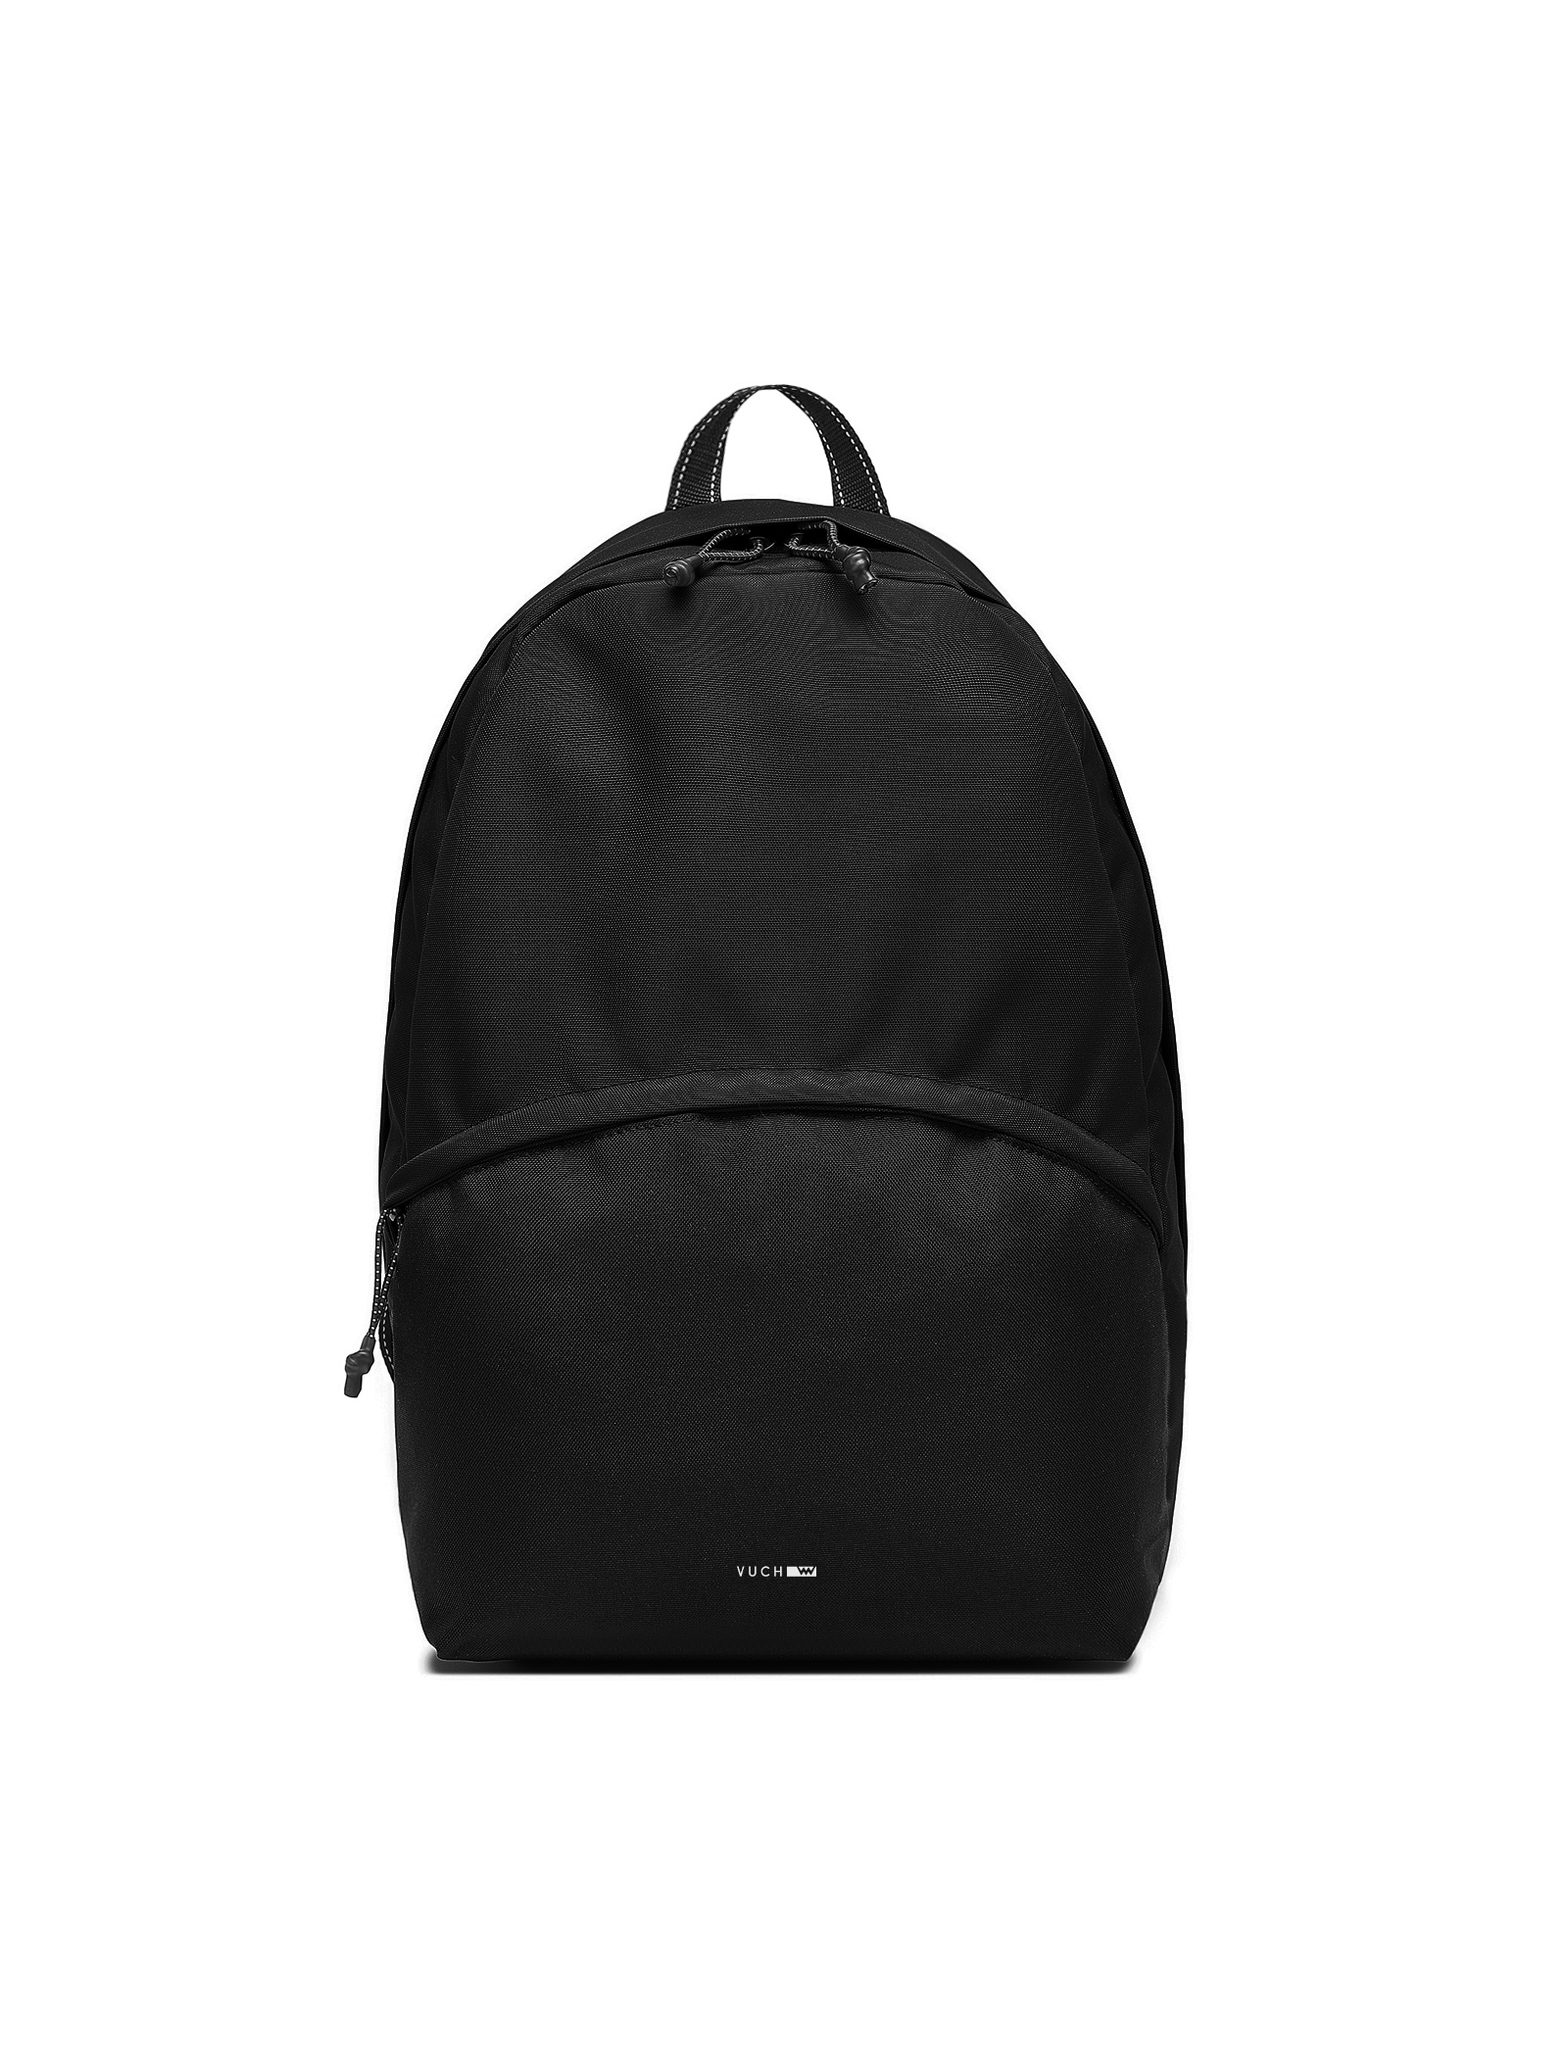 Urban backpack VUCH Aimer Black